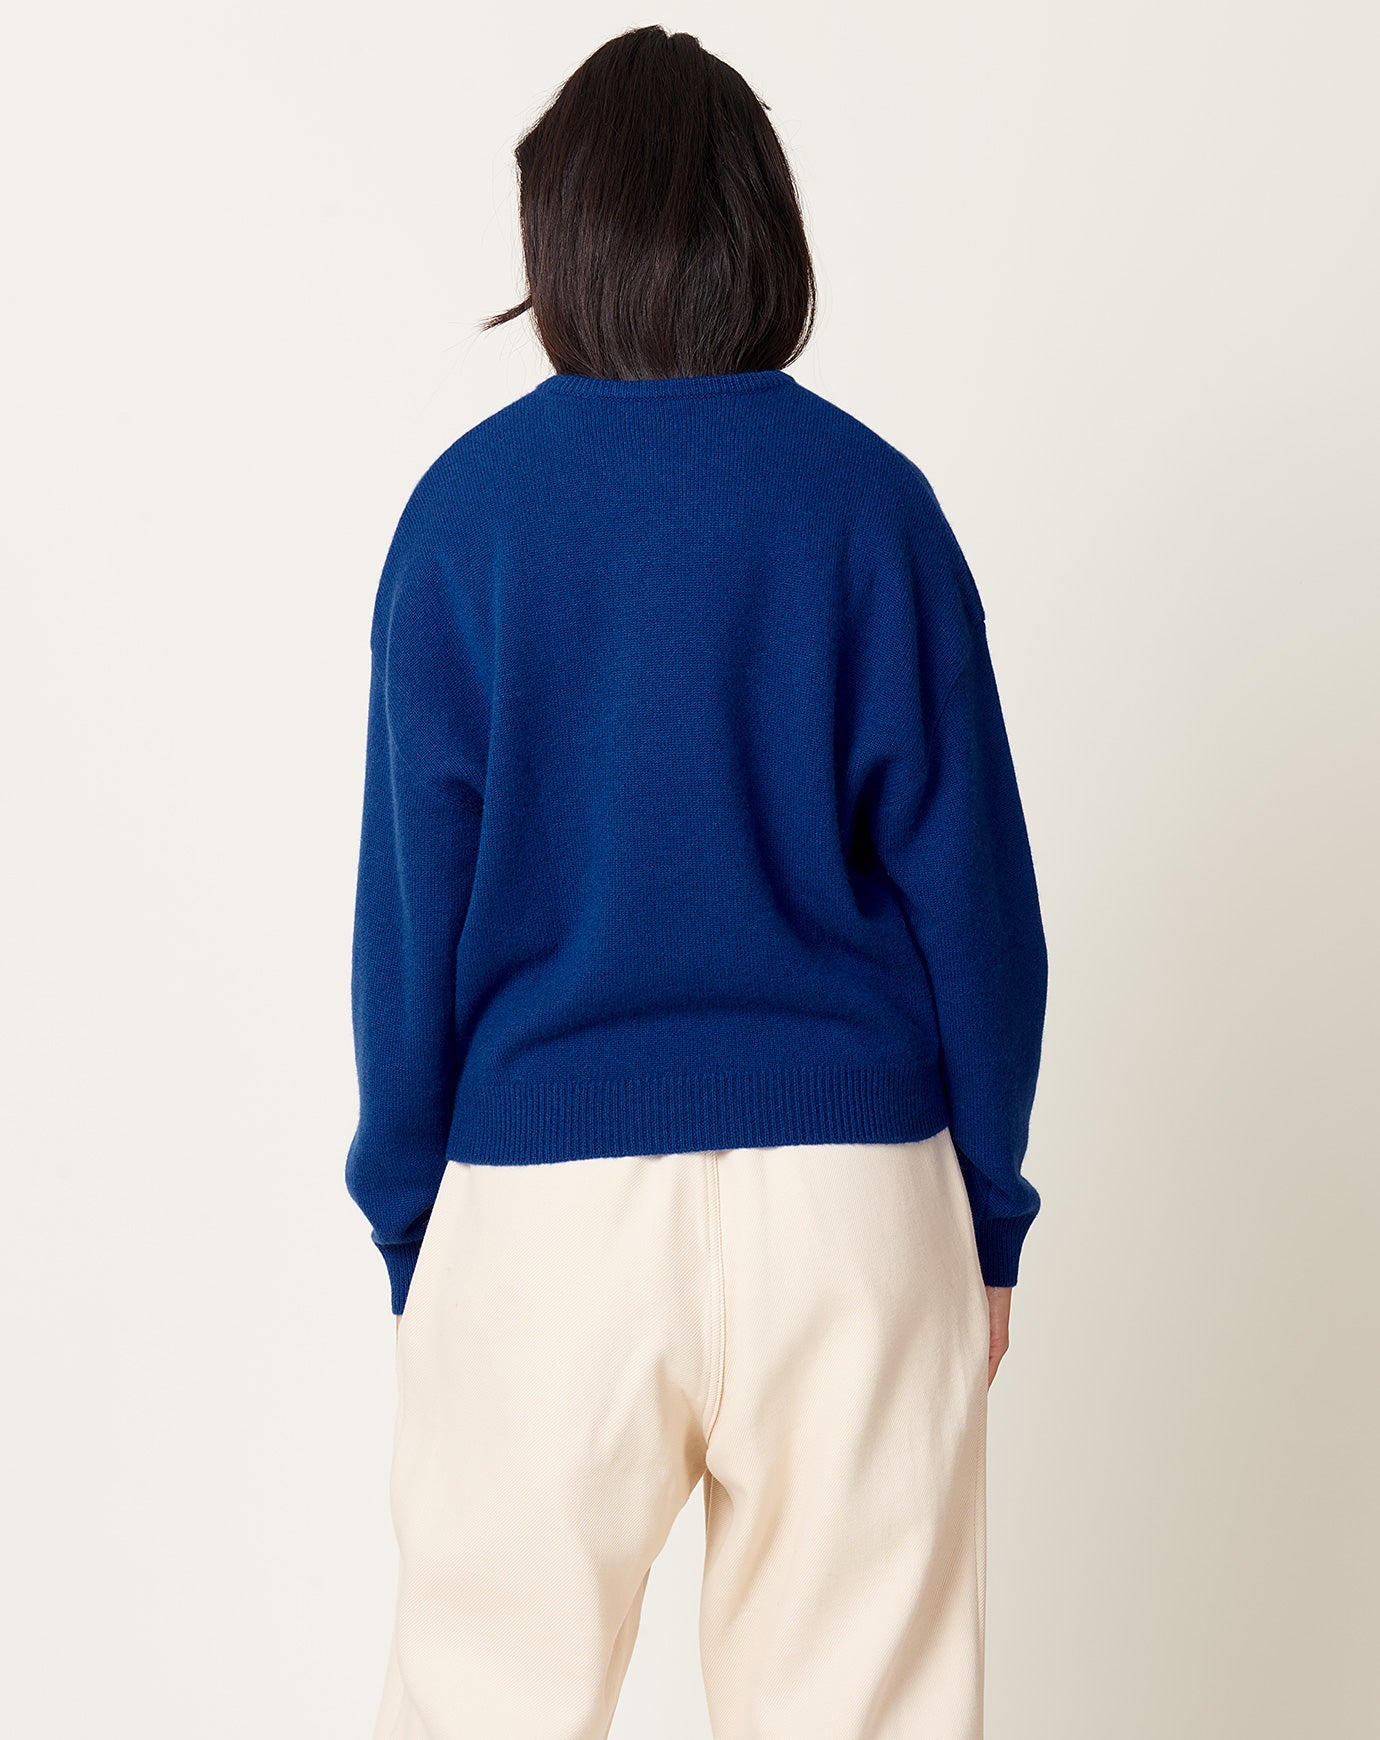 Demylee Artemis Sweater in Blue